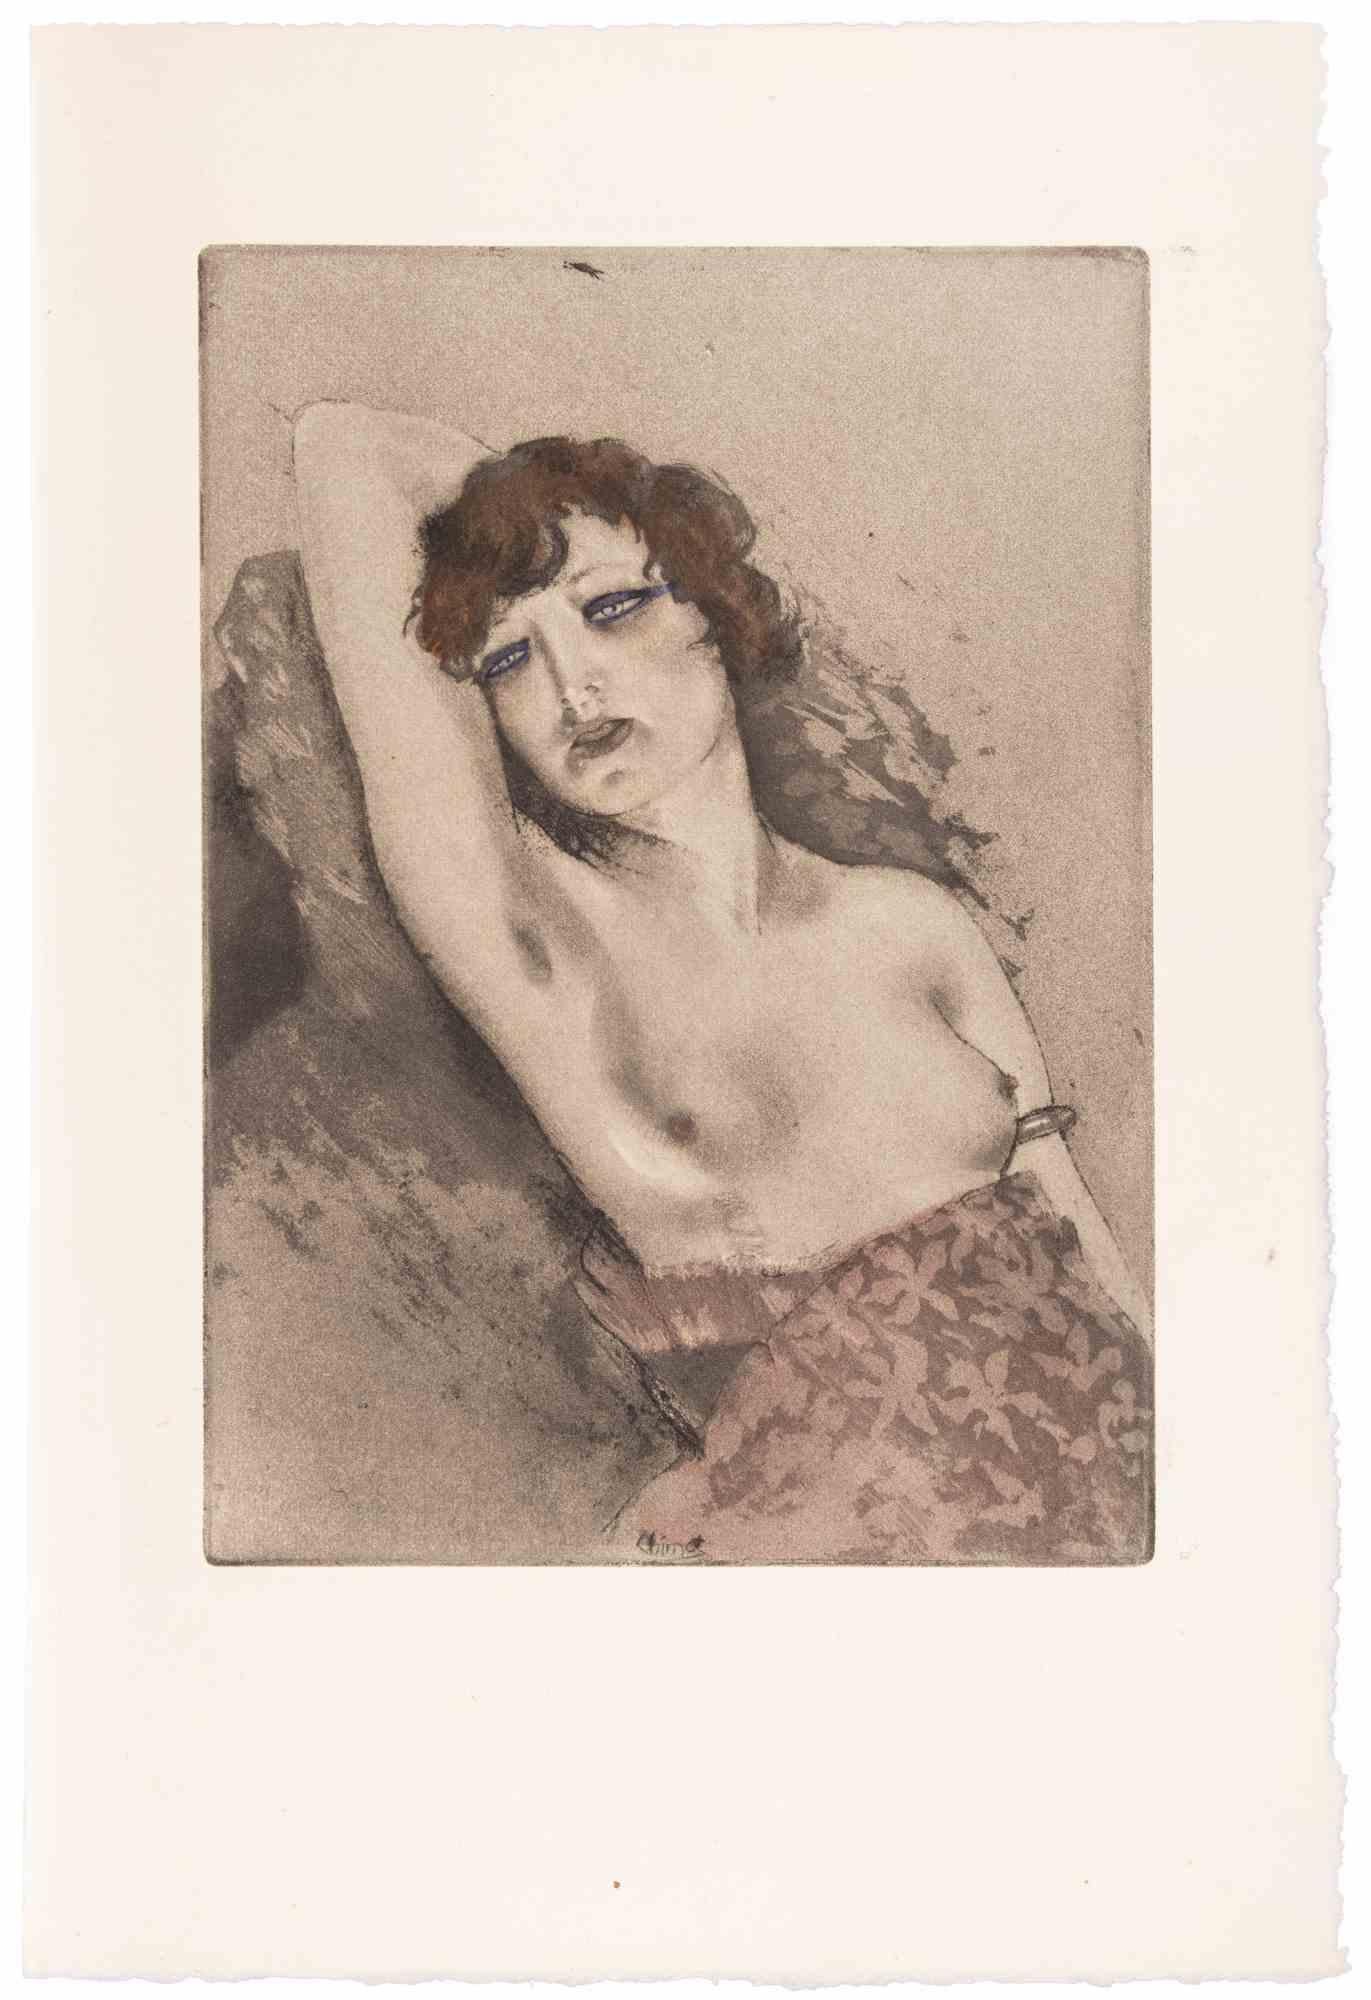 Akt einer Frau ist eine Radierung von Edouard Chimot aus den 1930er Jahren.

Das sehr schöne Kunstwerk ist in gutem Zustand.

Keine Unterschrift.

Stellt eine nackte junge Frau dar.

Édouard Chimot (26. November 1880 - 7. Juni 1959) war ein